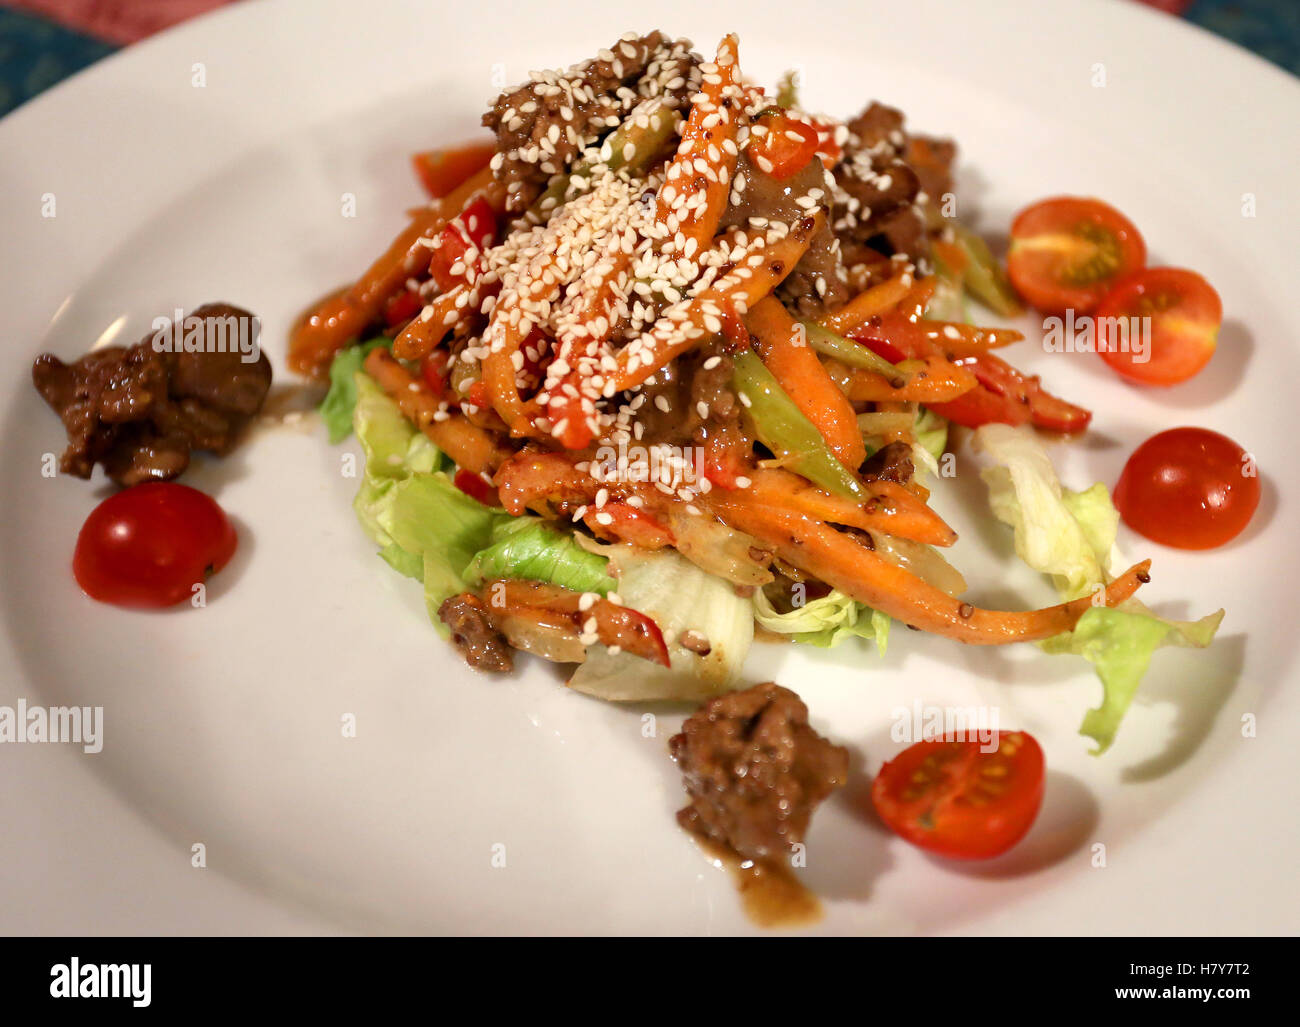 Köstliche vegetarische Salat fotografiert Closeup auf einem weißen Teller Stockfoto